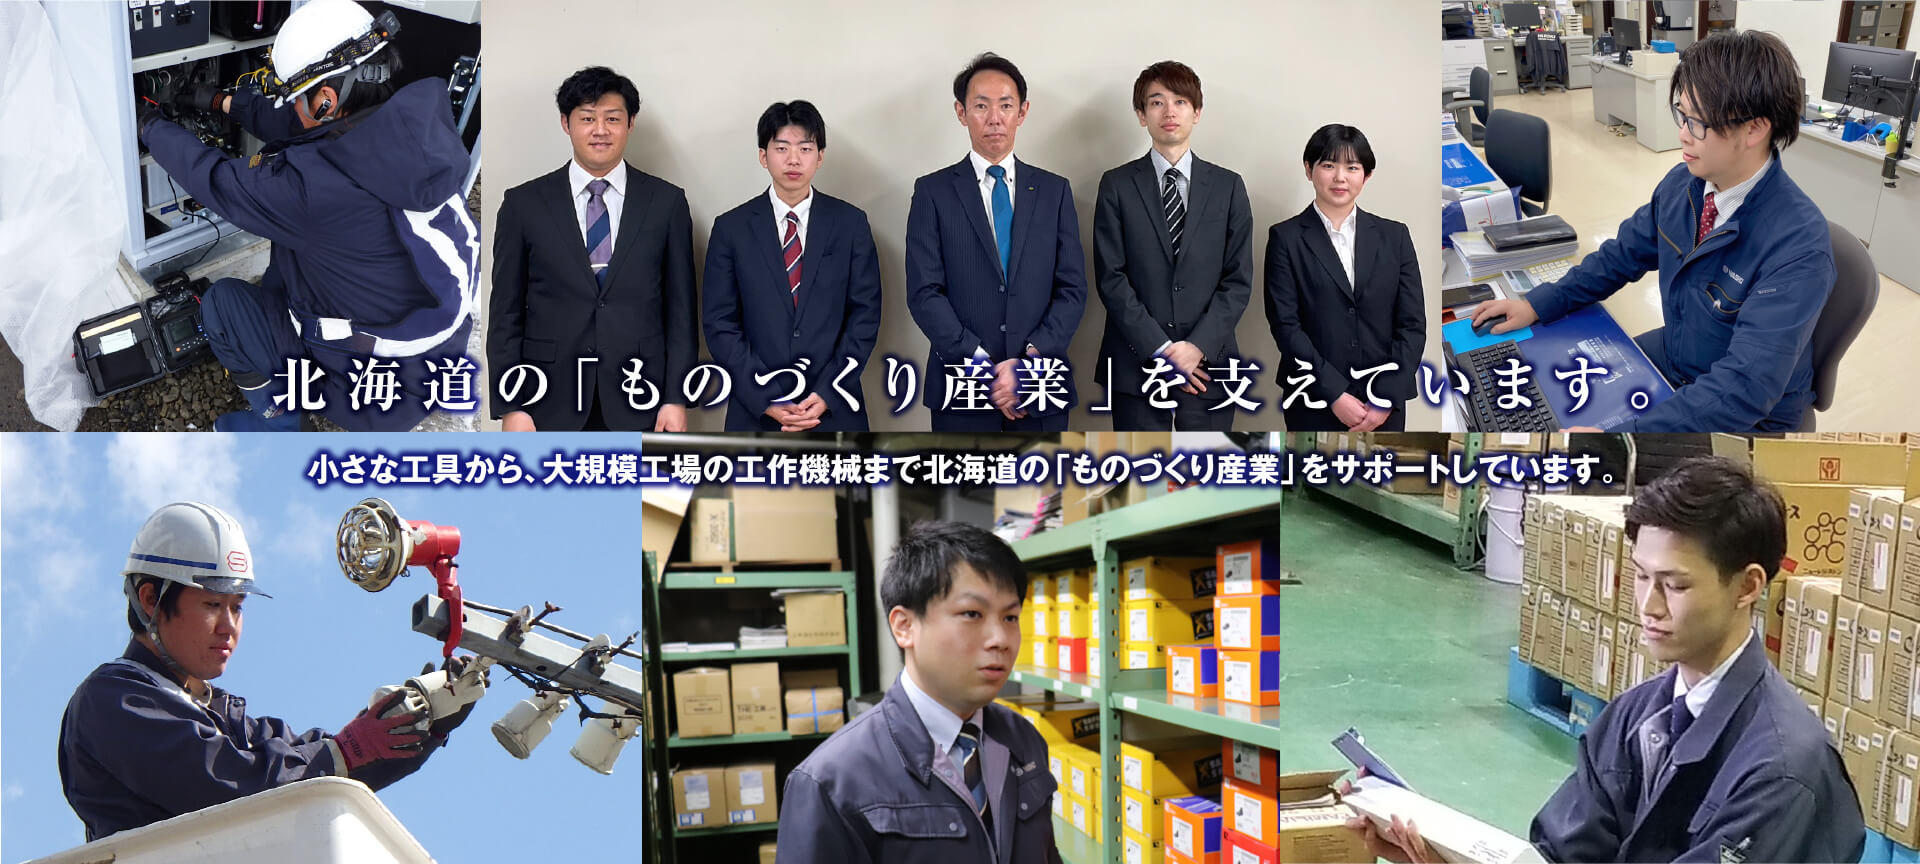 北海道の「ものづくり産業」を支えています。小さな工具から、大規模工場の工作機械まで北海道の「ものづくり産業」をサポートしています。